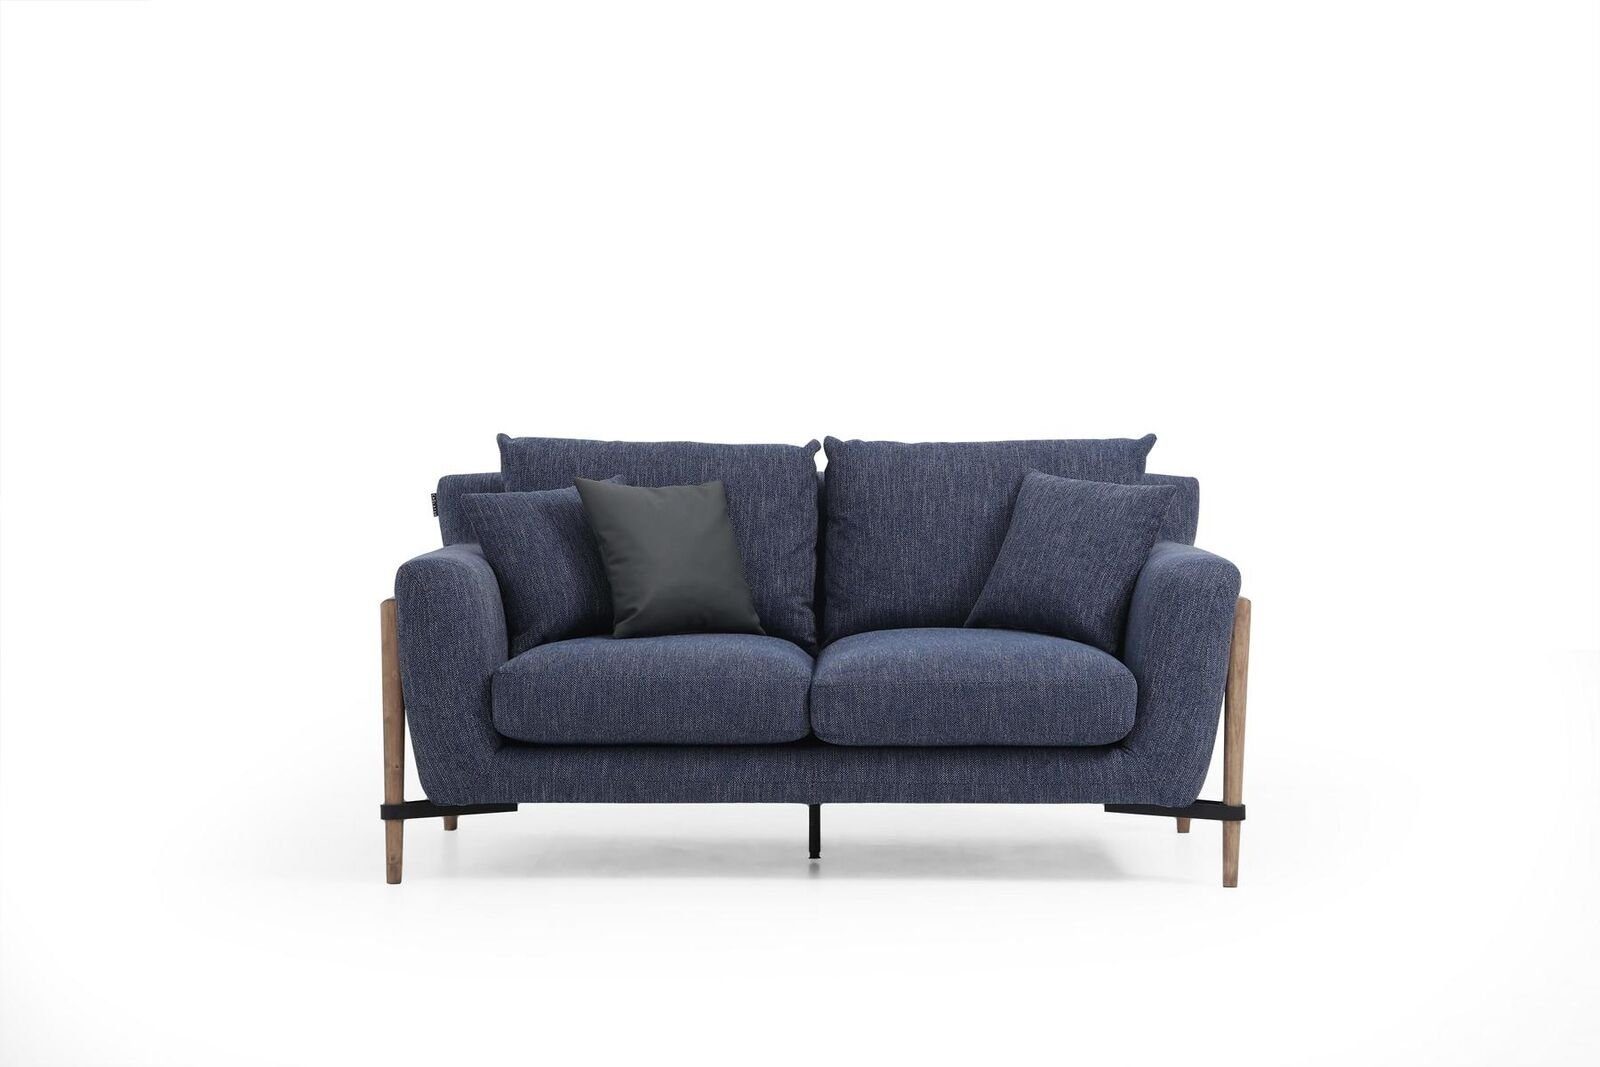 Stoff Modern Teile, Europa 2 Sofa JVmoebel Made Sofas in 1 Wohnzimmer 2-Sitzer Sitzer Zweisitzer Blau, Design